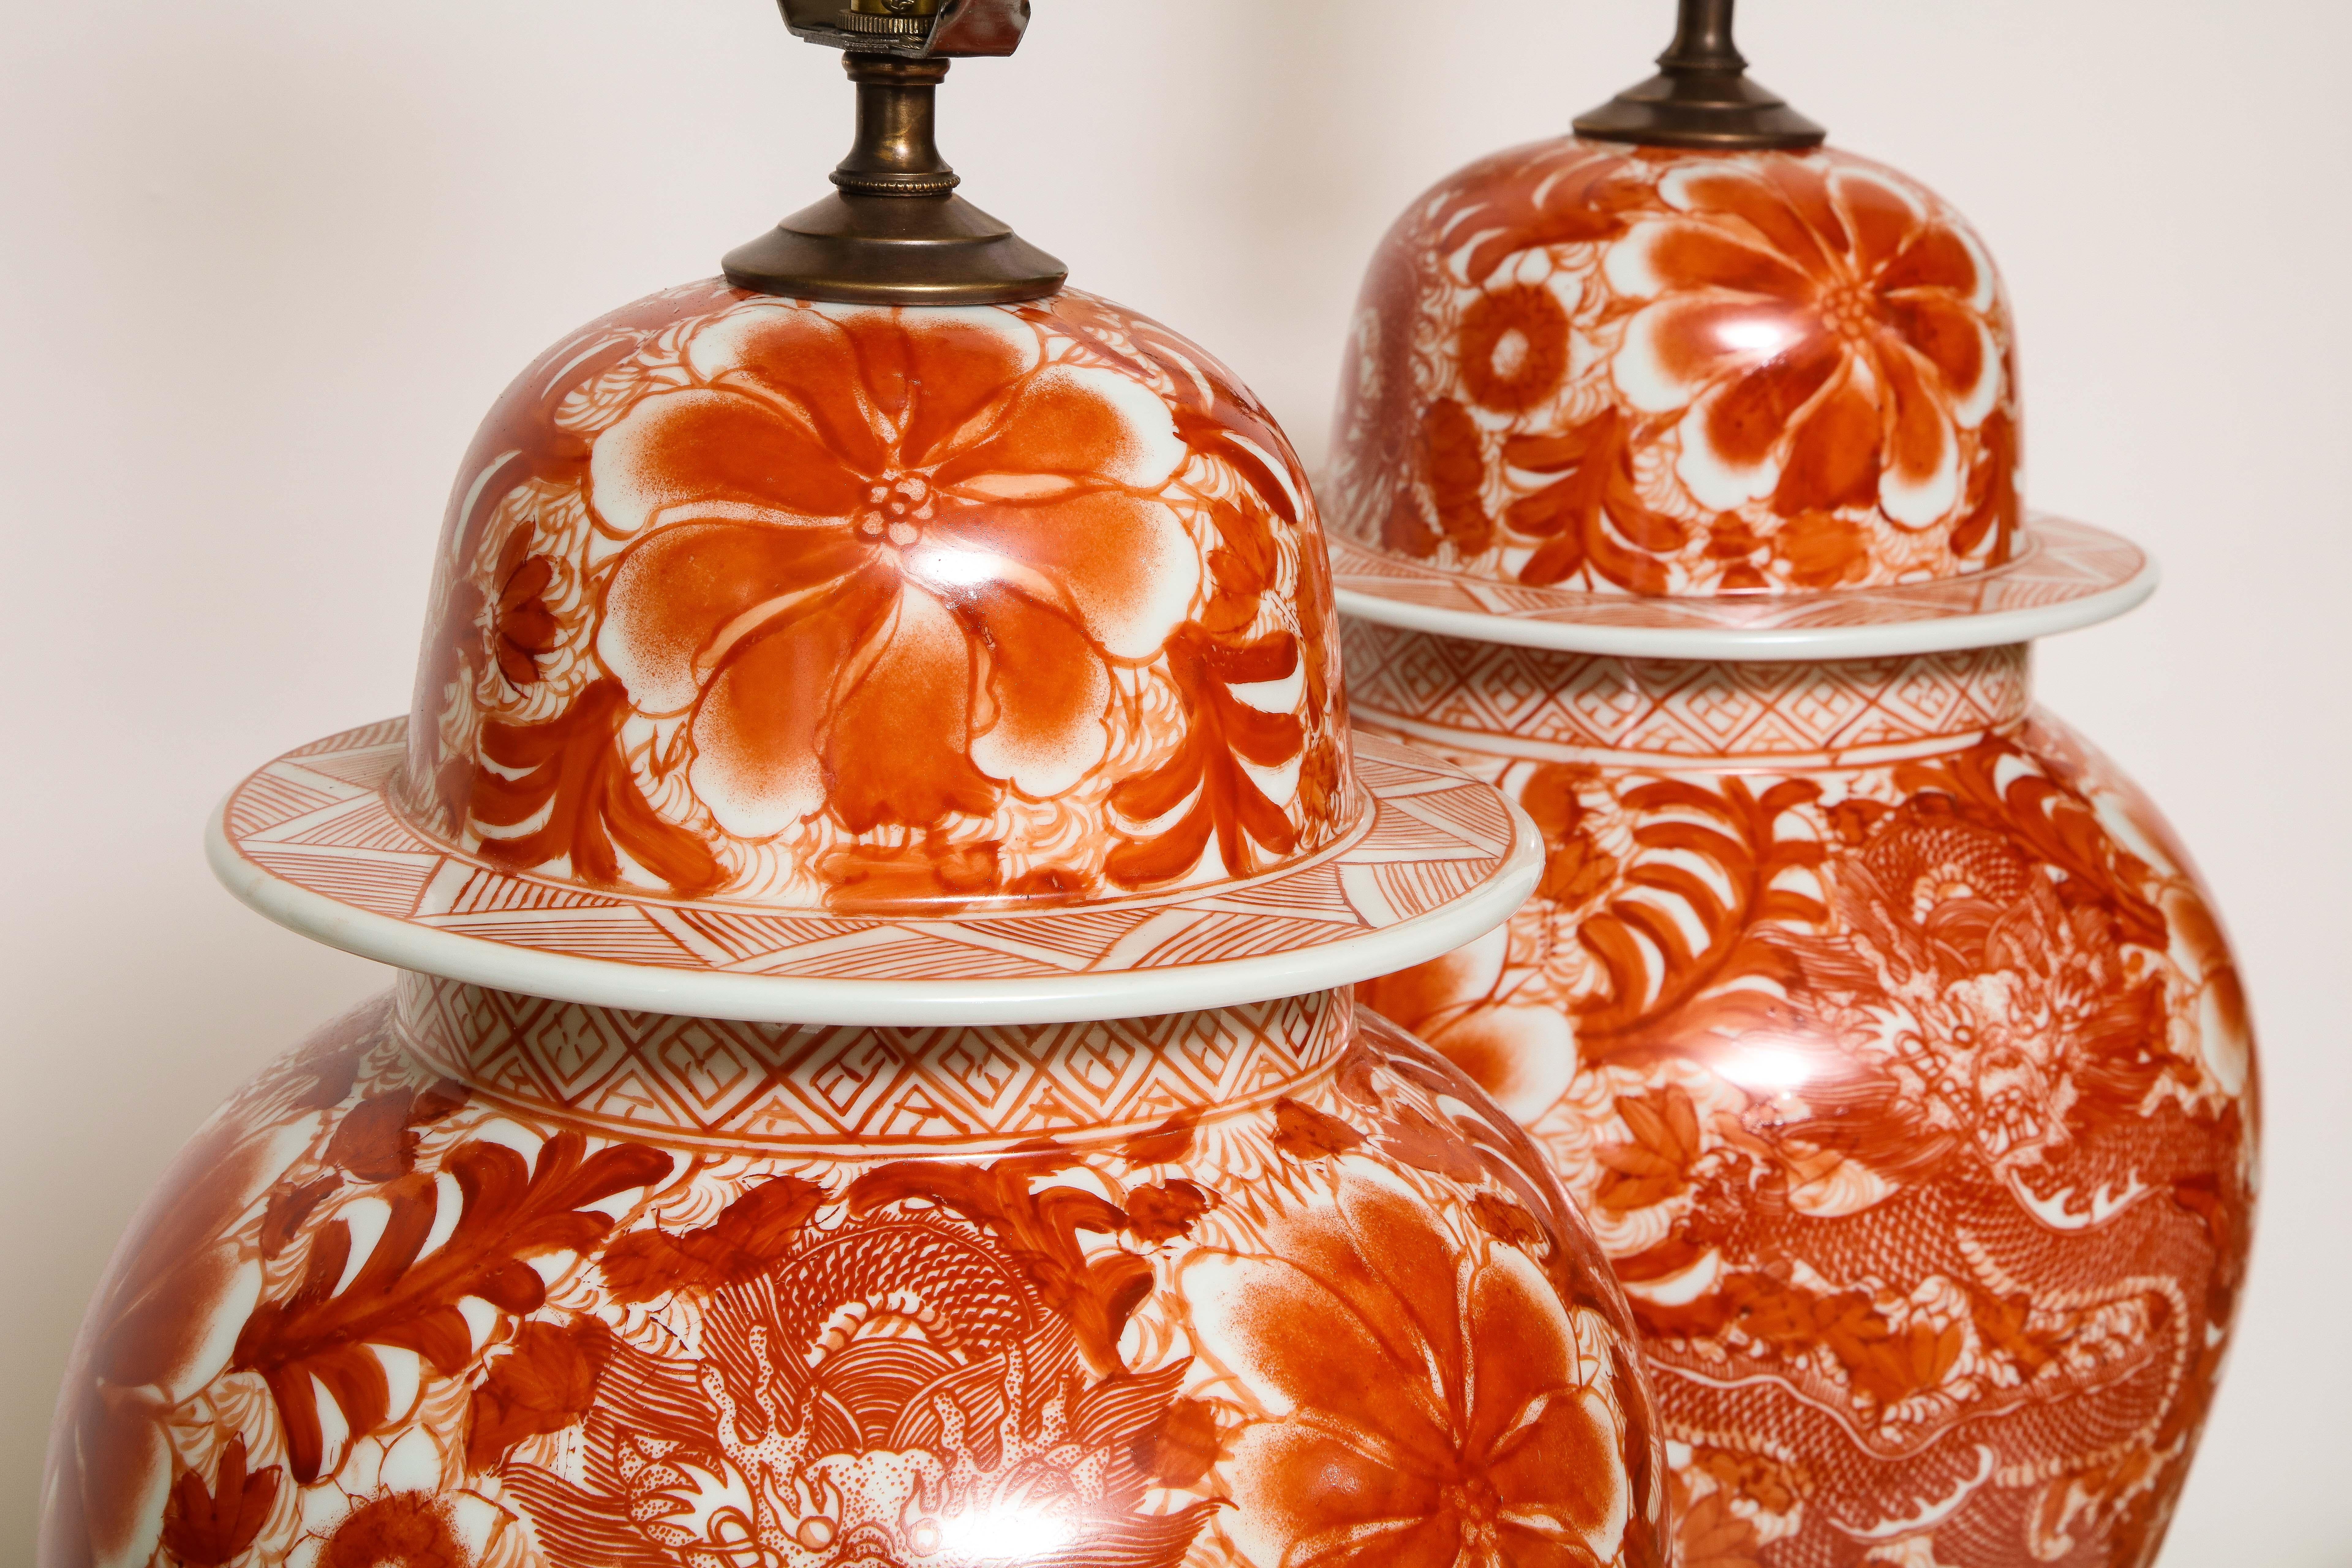 Pair of Orange and White Ceramic Lamps 1